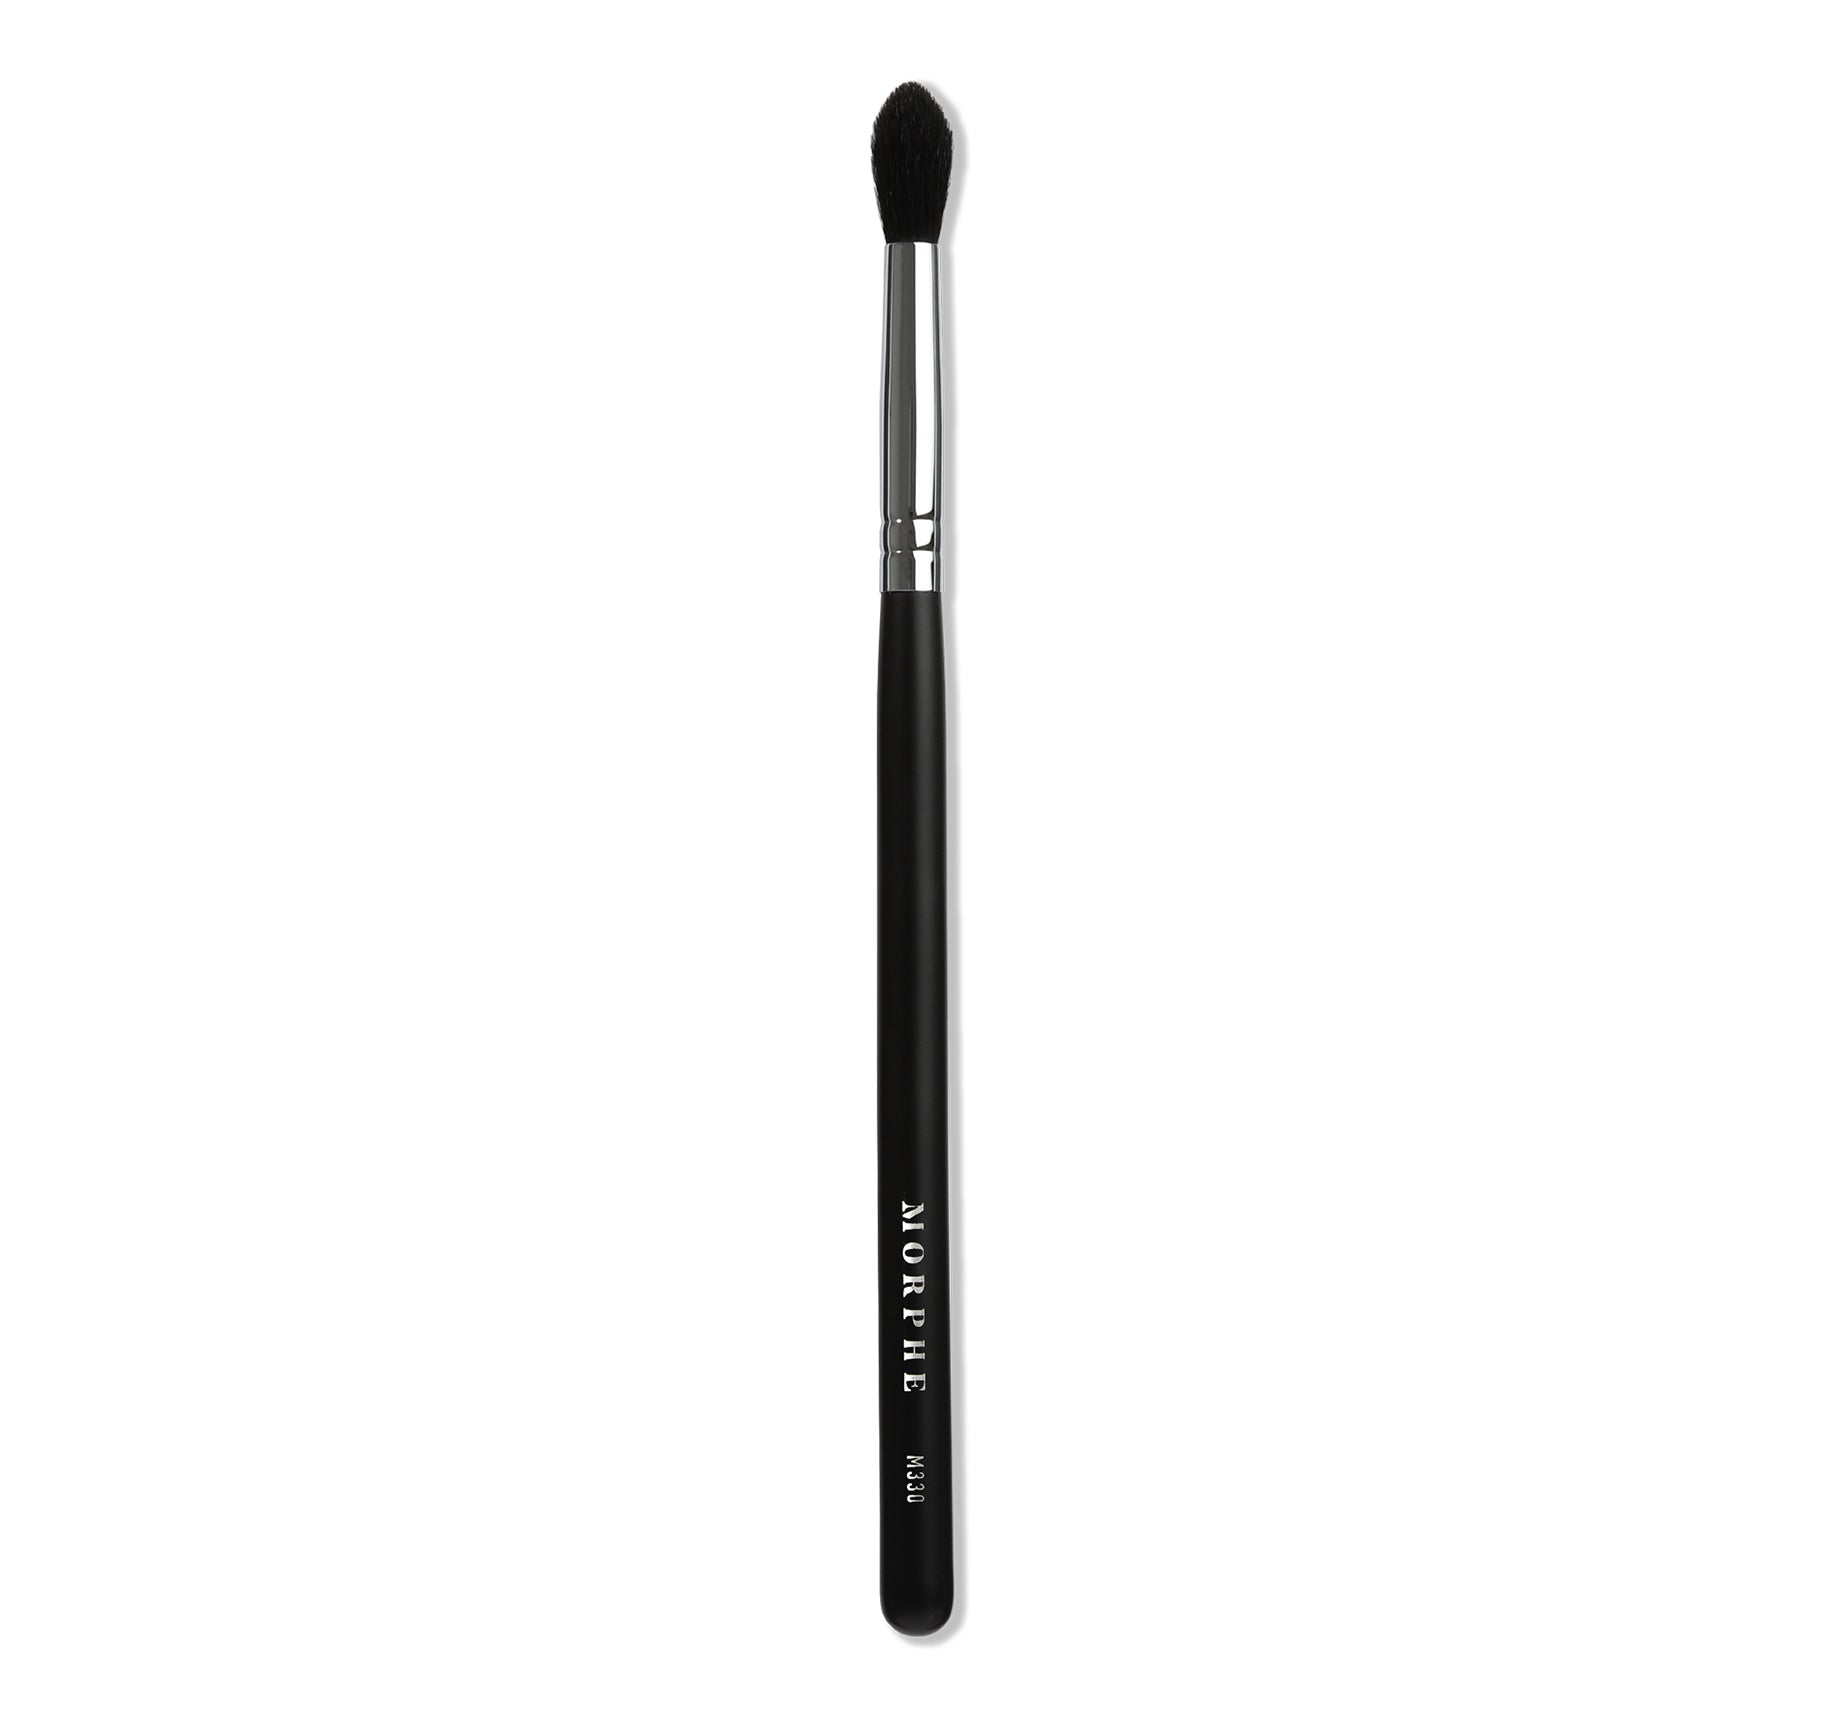 M330 Blending Crease Eyeshadow Brush